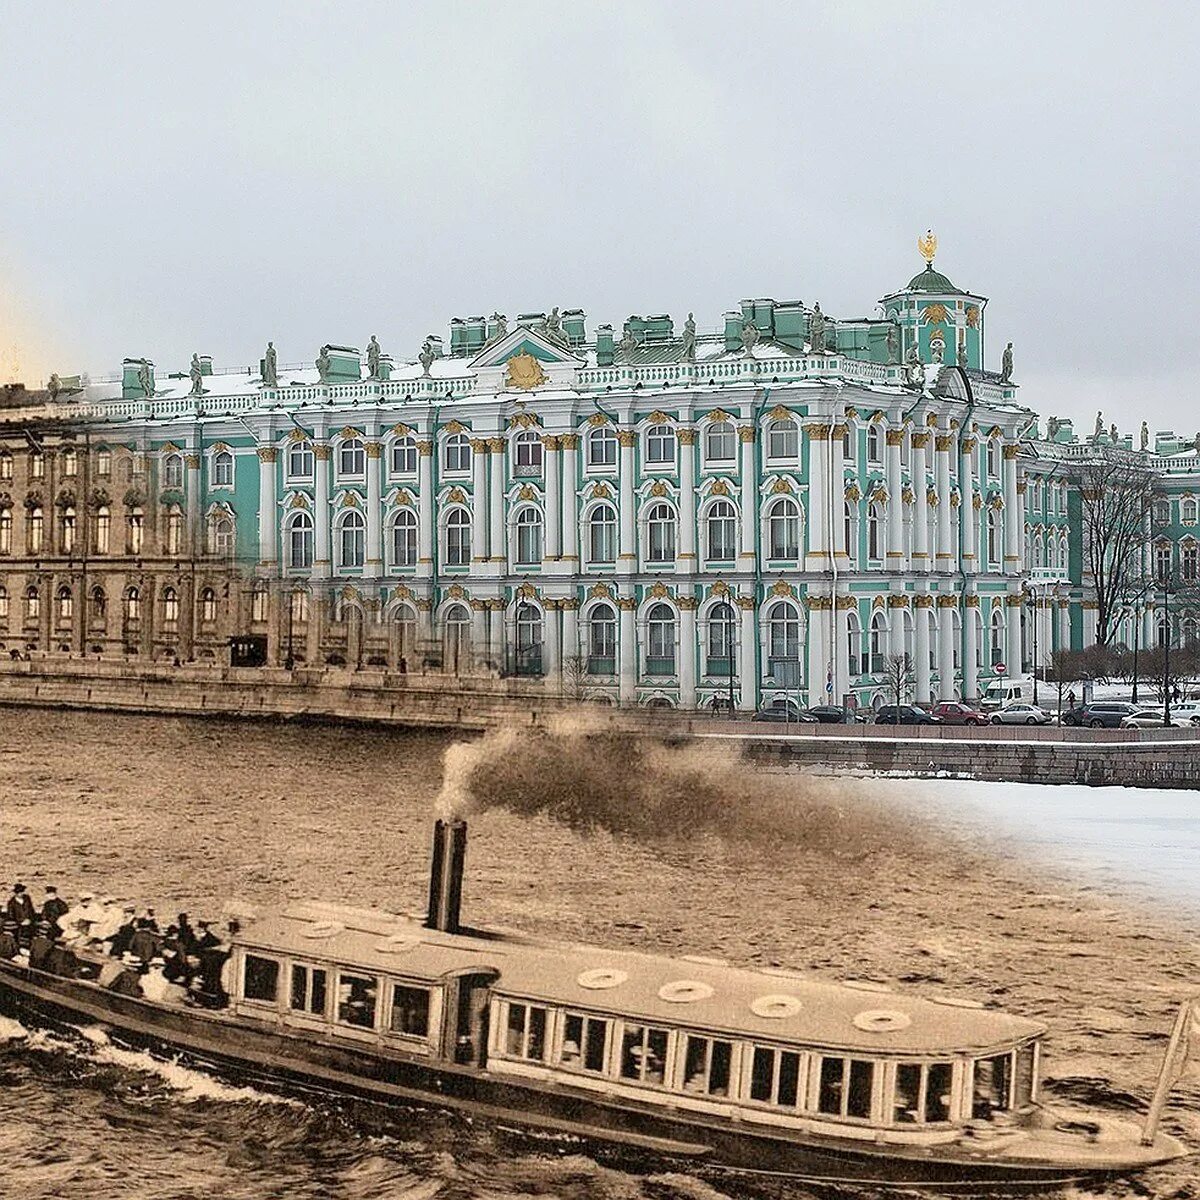 Питер зимний дворец. Зимний дворец 19 век. Зимний дворец 1825. Петербург зимний дворец 19 века.